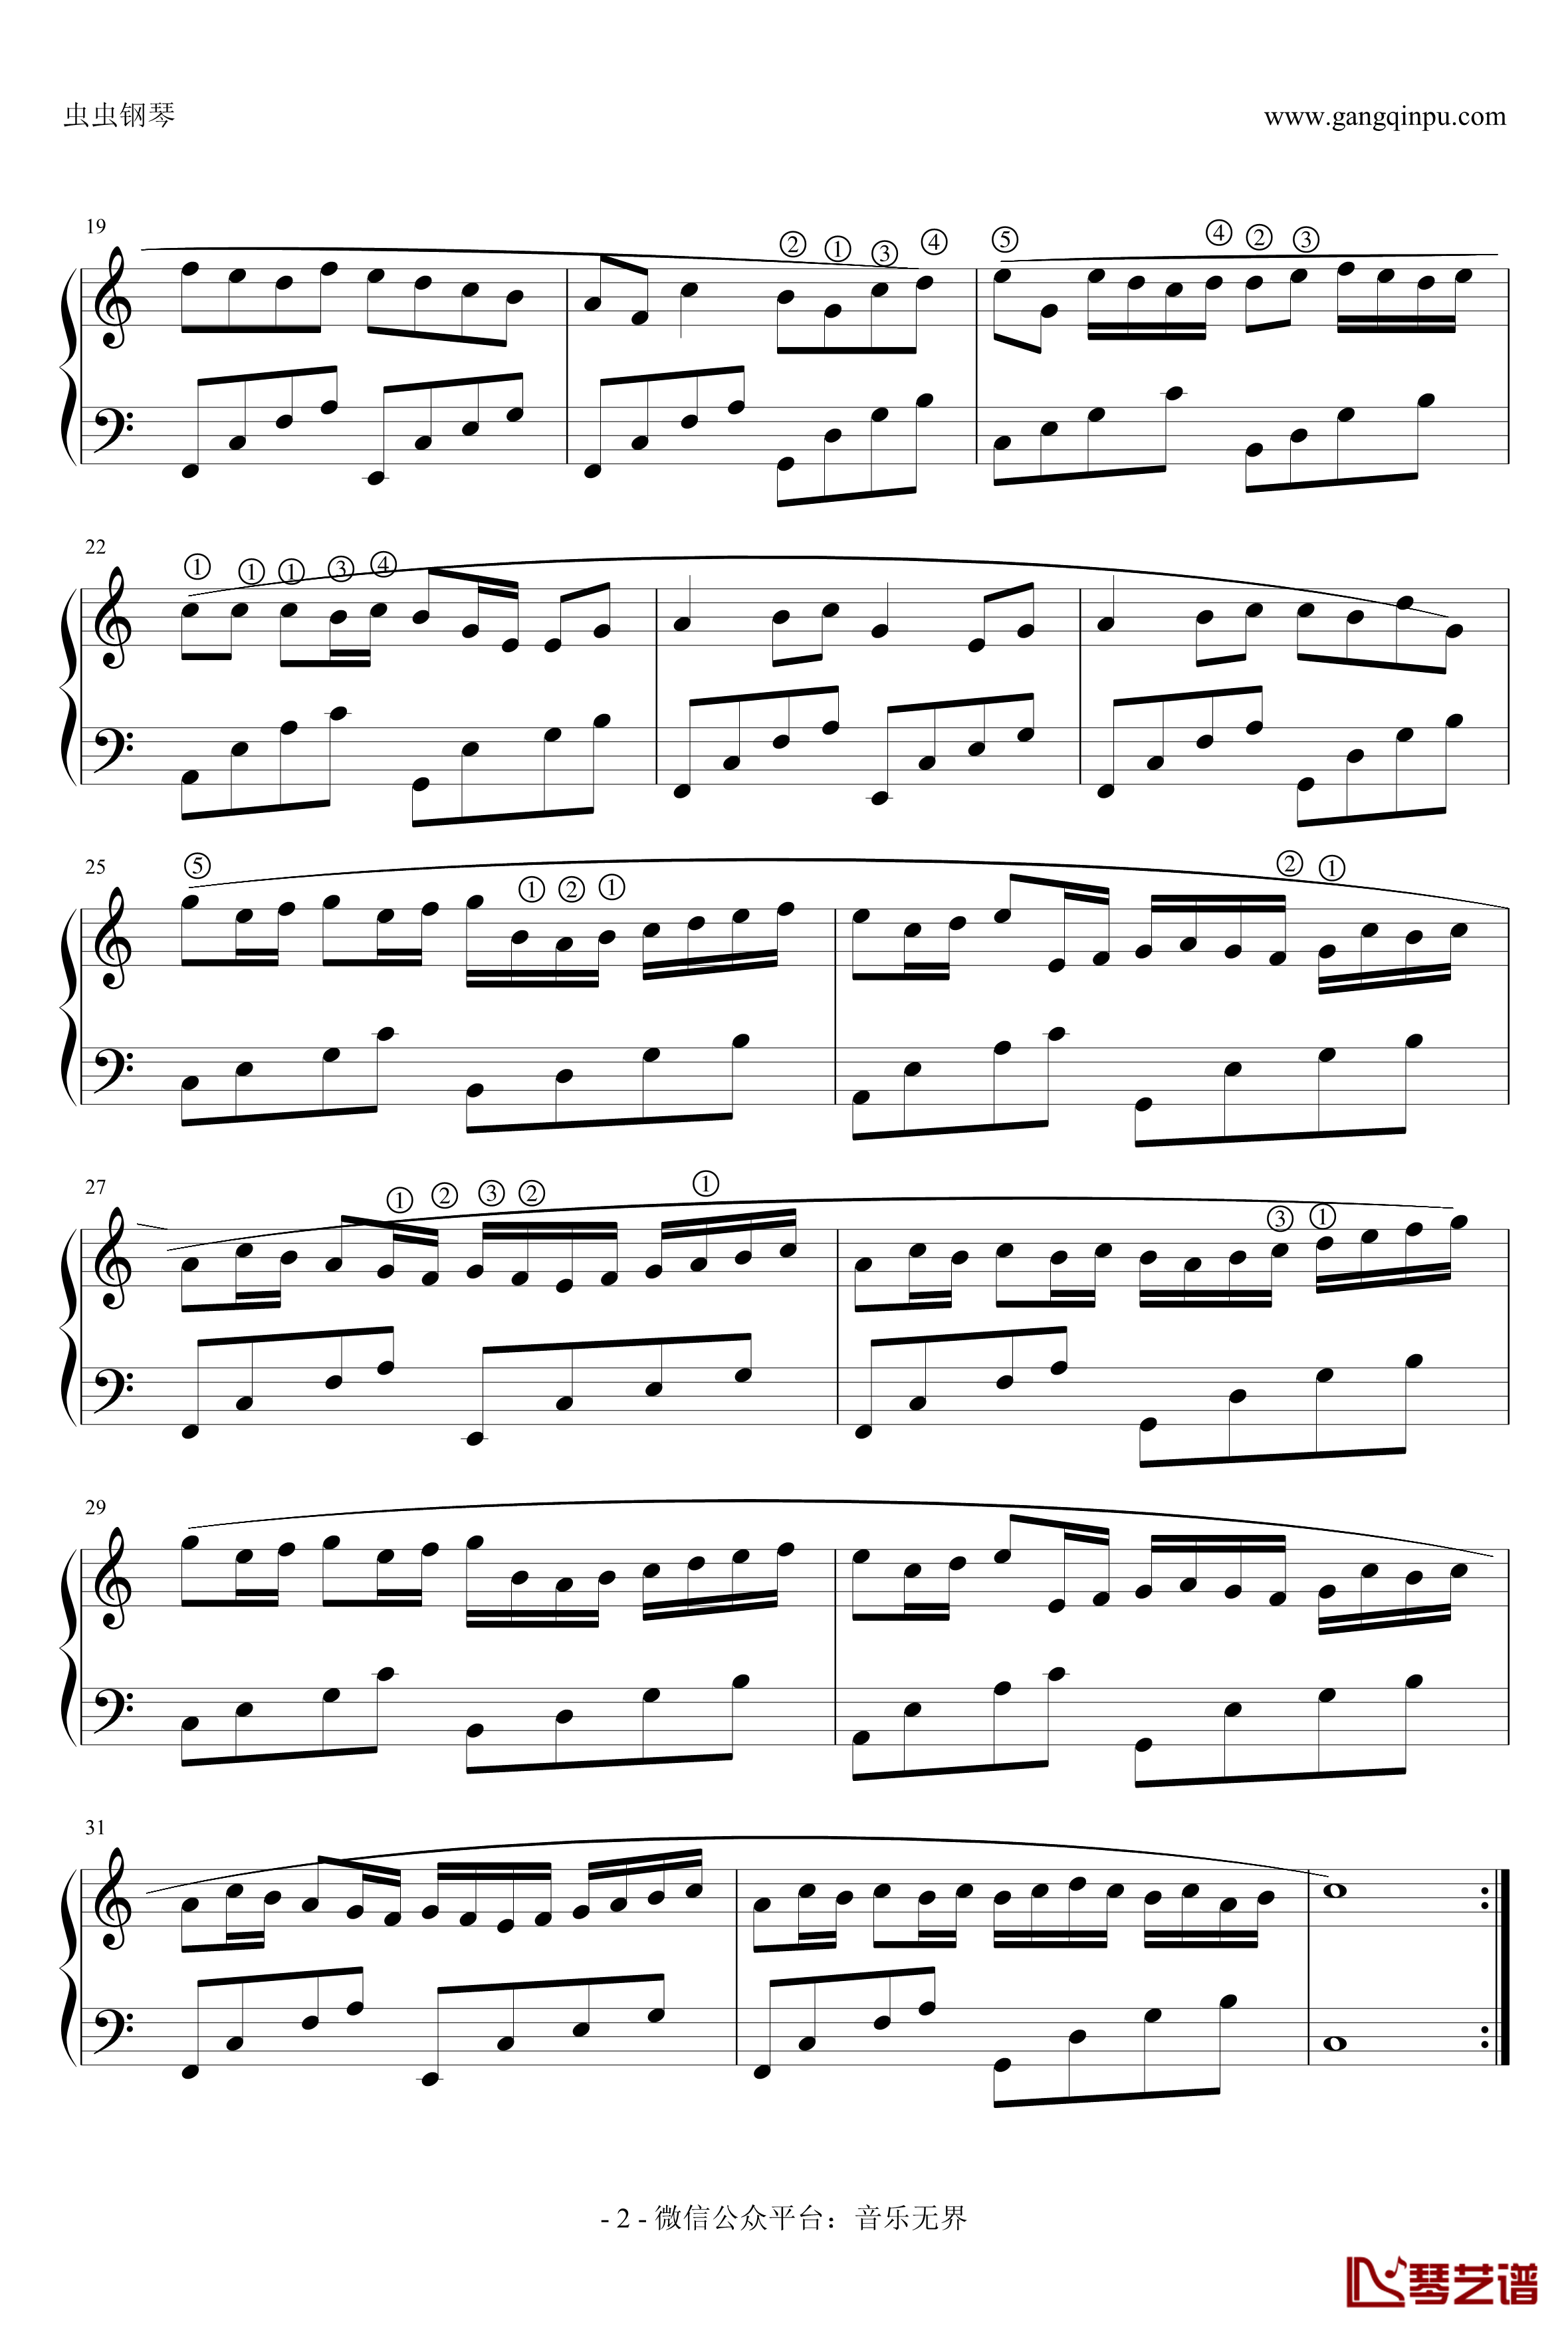 卡农钢琴谱-极简版带指法-帕赫贝尔-Pachelbel